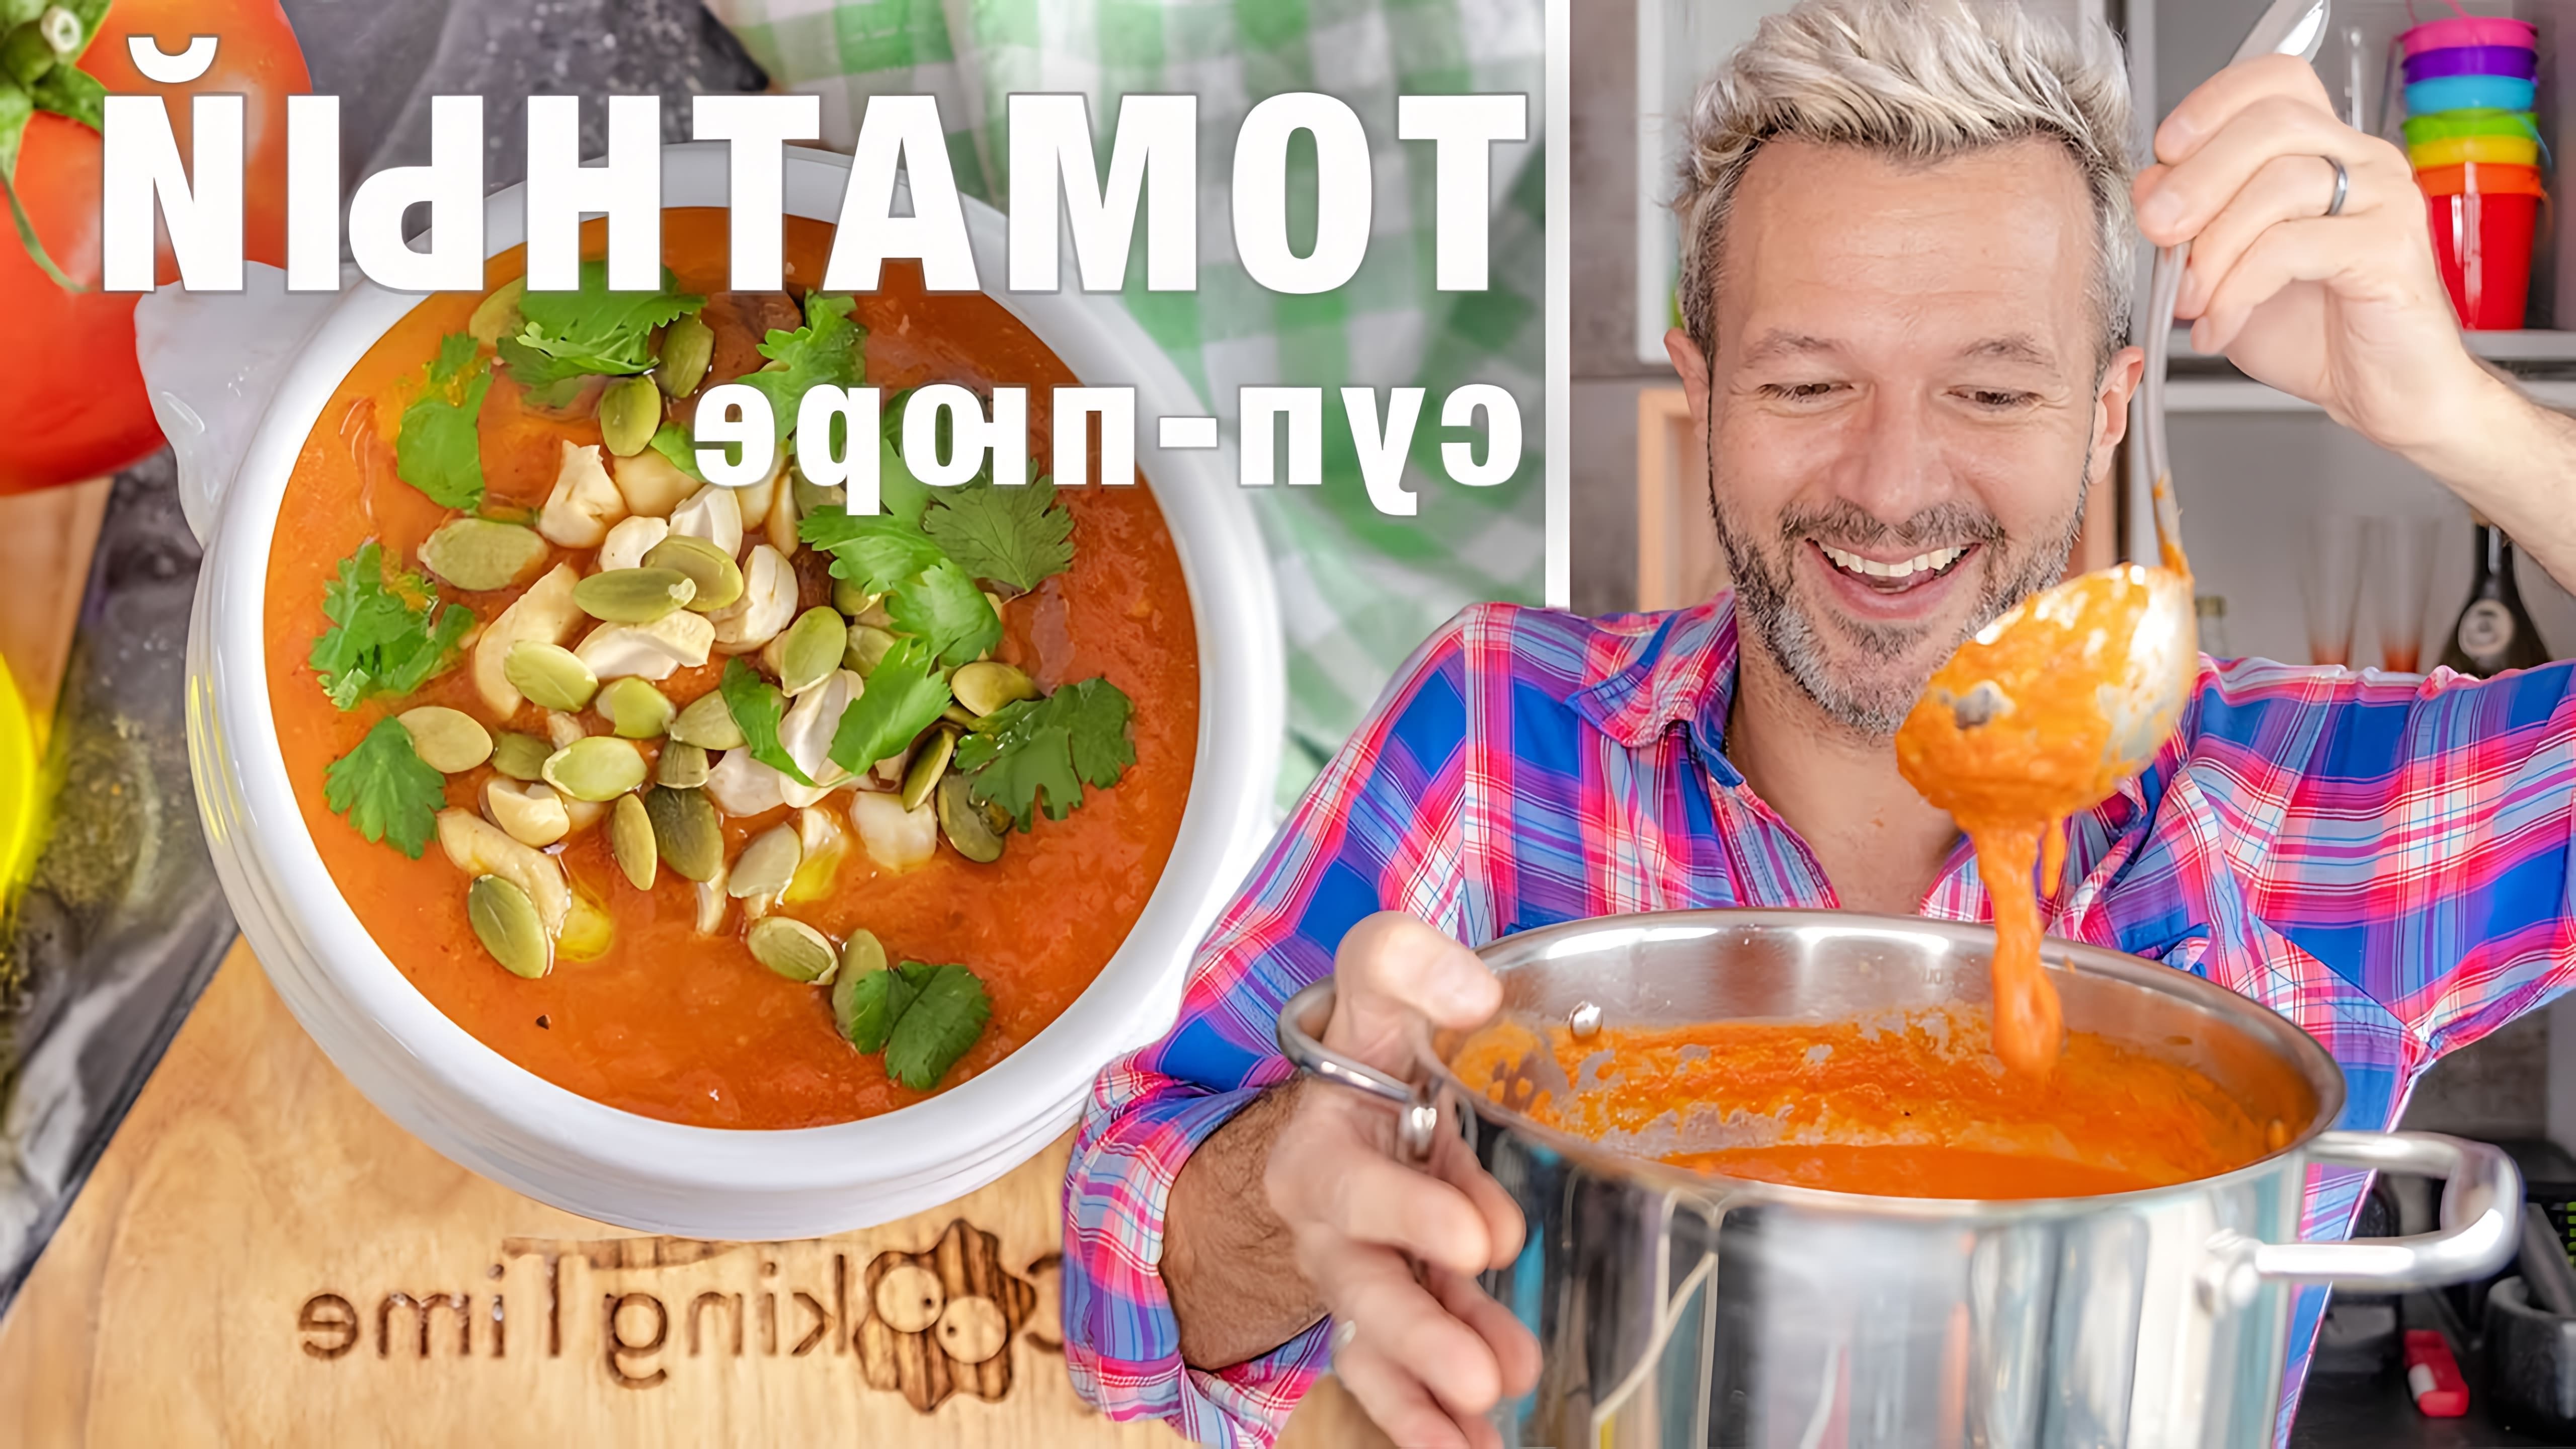 В этом видео Саша Демьяненко показывает, как приготовить горячий томатный суп пюре или гаспачо